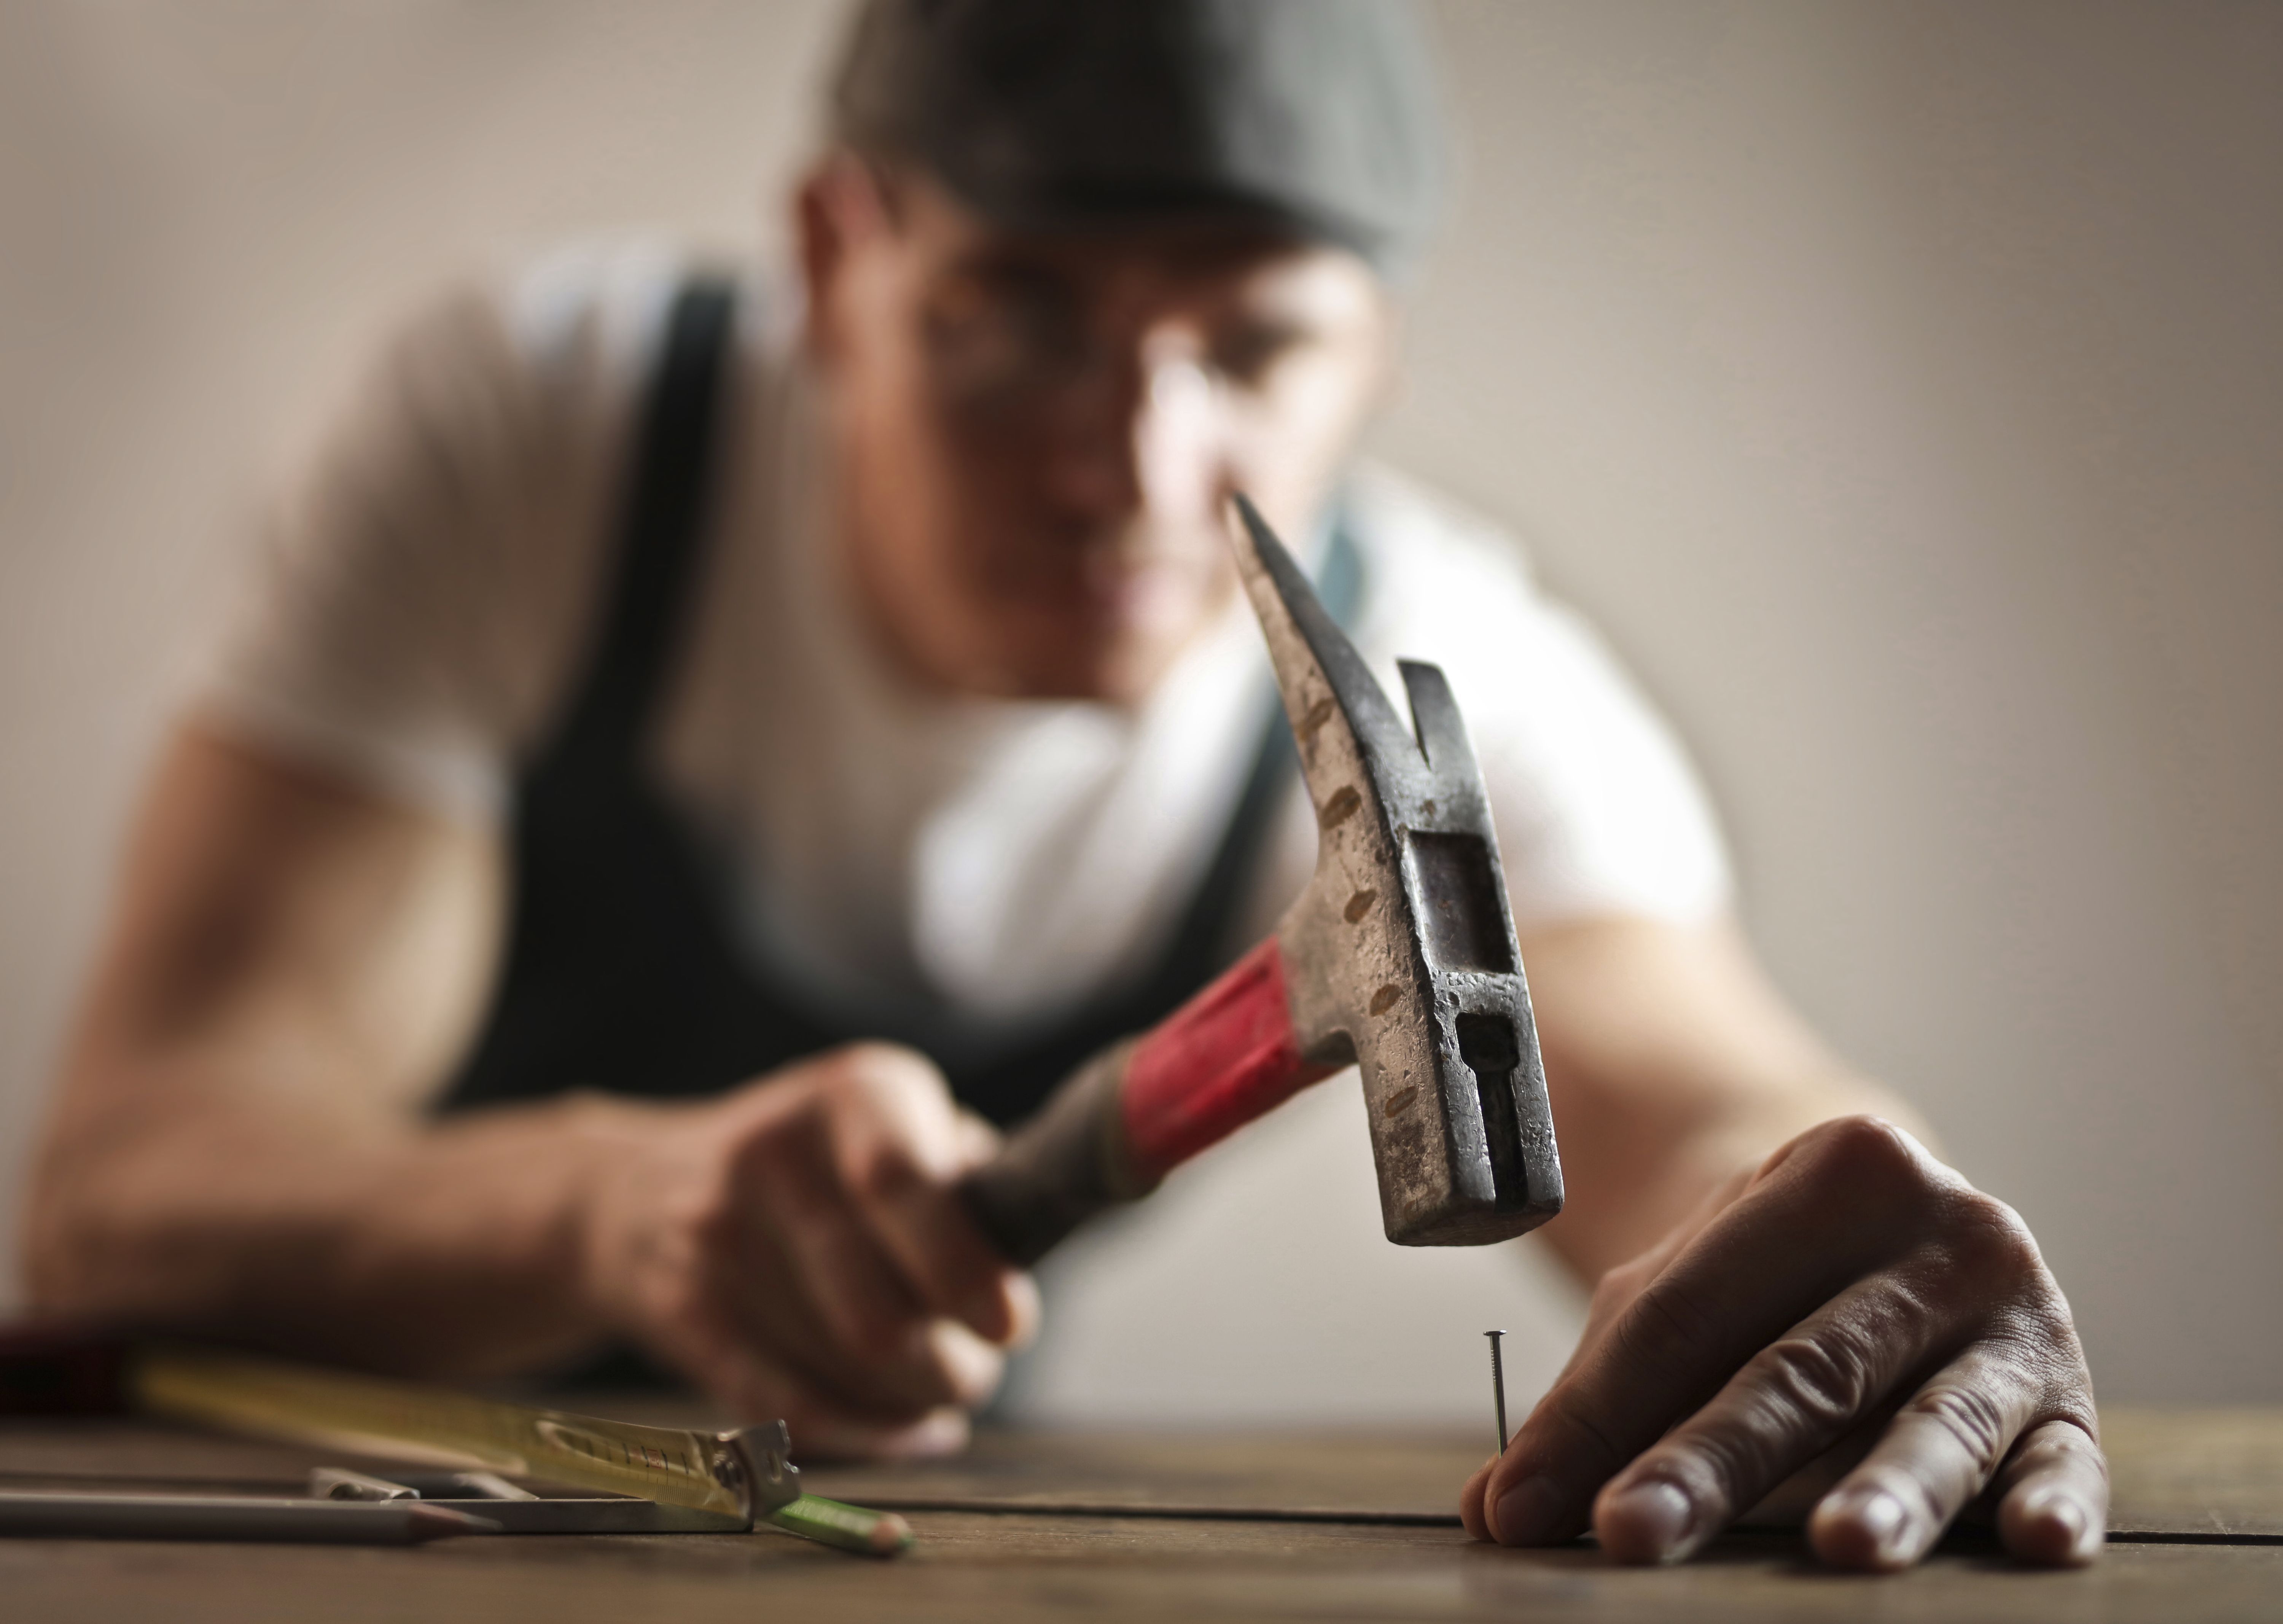 Der Latthammer wird vor allem beim Holzbau verwendet und ist deshalb bei Zimmermännern überaus beliebt. Die auffälligsten Merkmale des speziellen Werkzeugs sind die unterschiedlich langen Finnen und der integrierte Nagelheber.